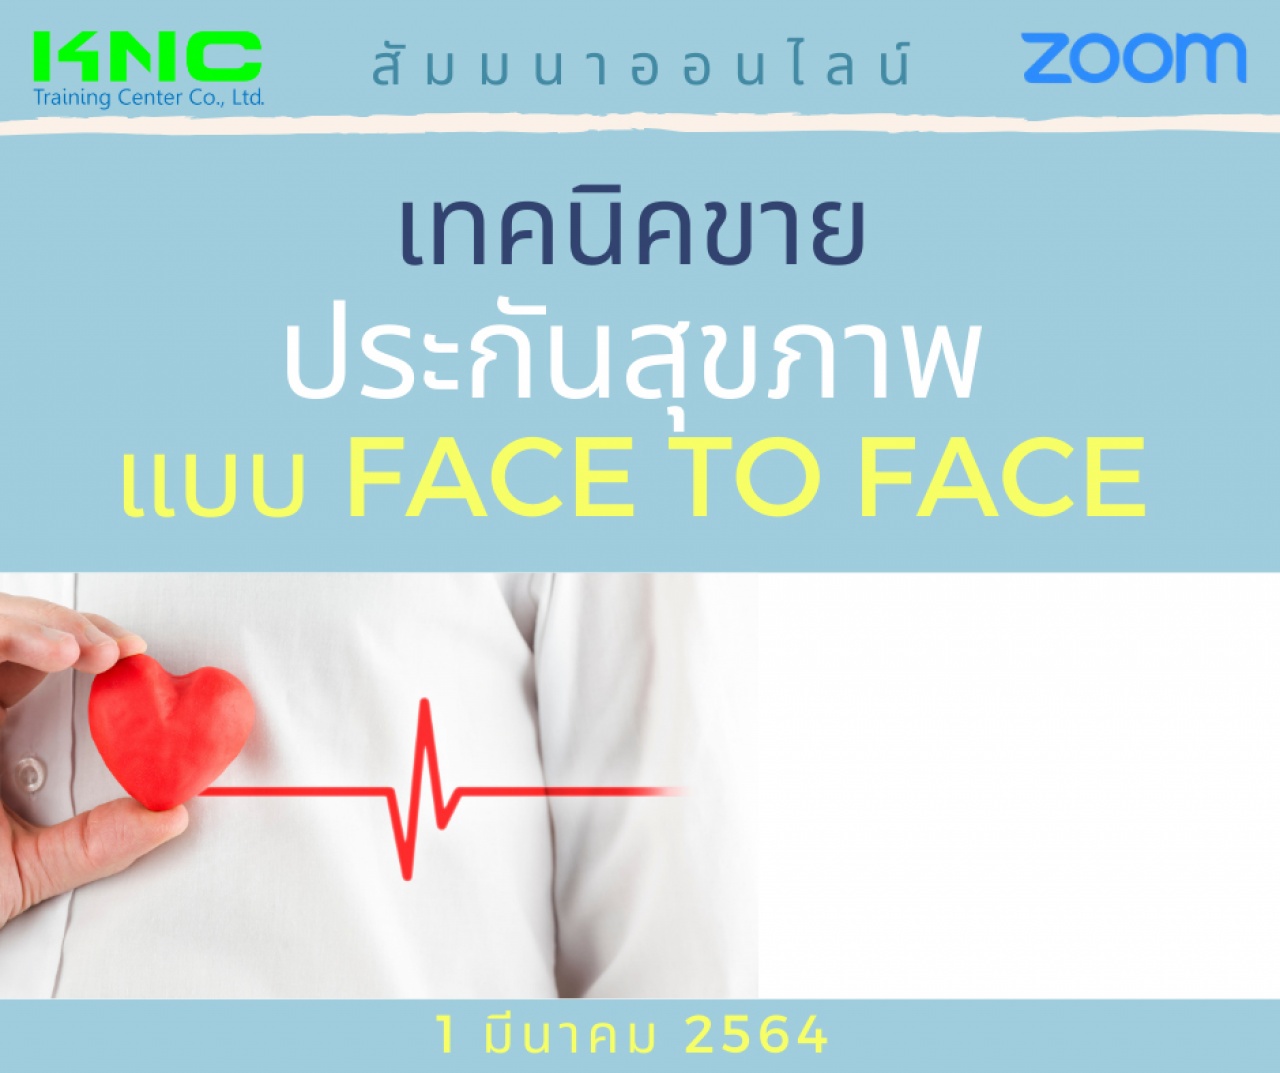 สัมมนา Online : เทคนิคขายประกันสุขภาพ แบบ Face to Face